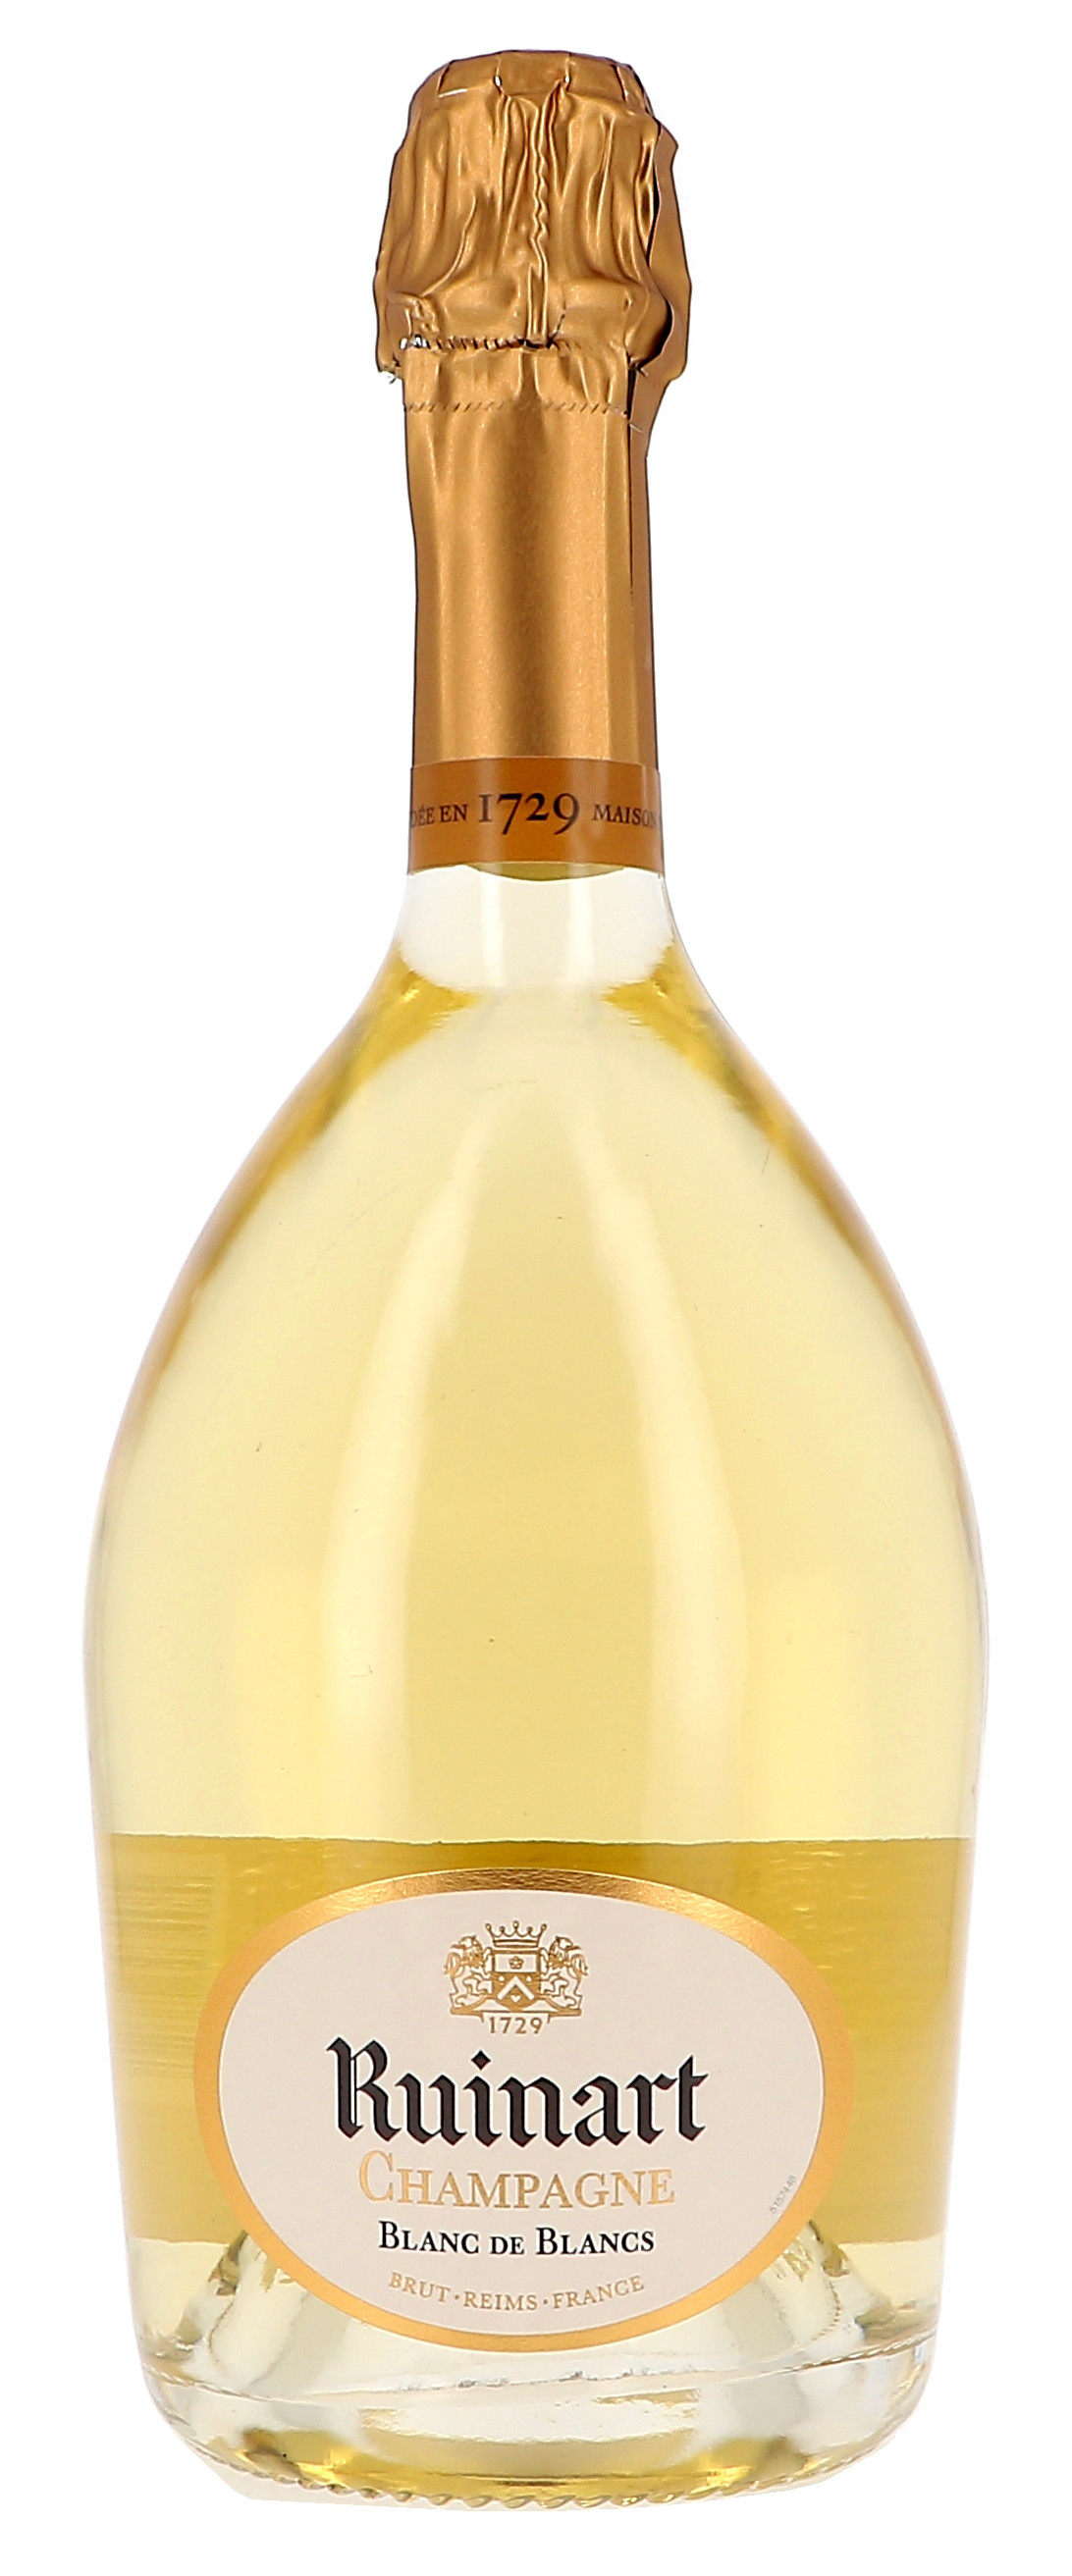 Champagne Ruinart Blanc de Blancs 75cl Brut